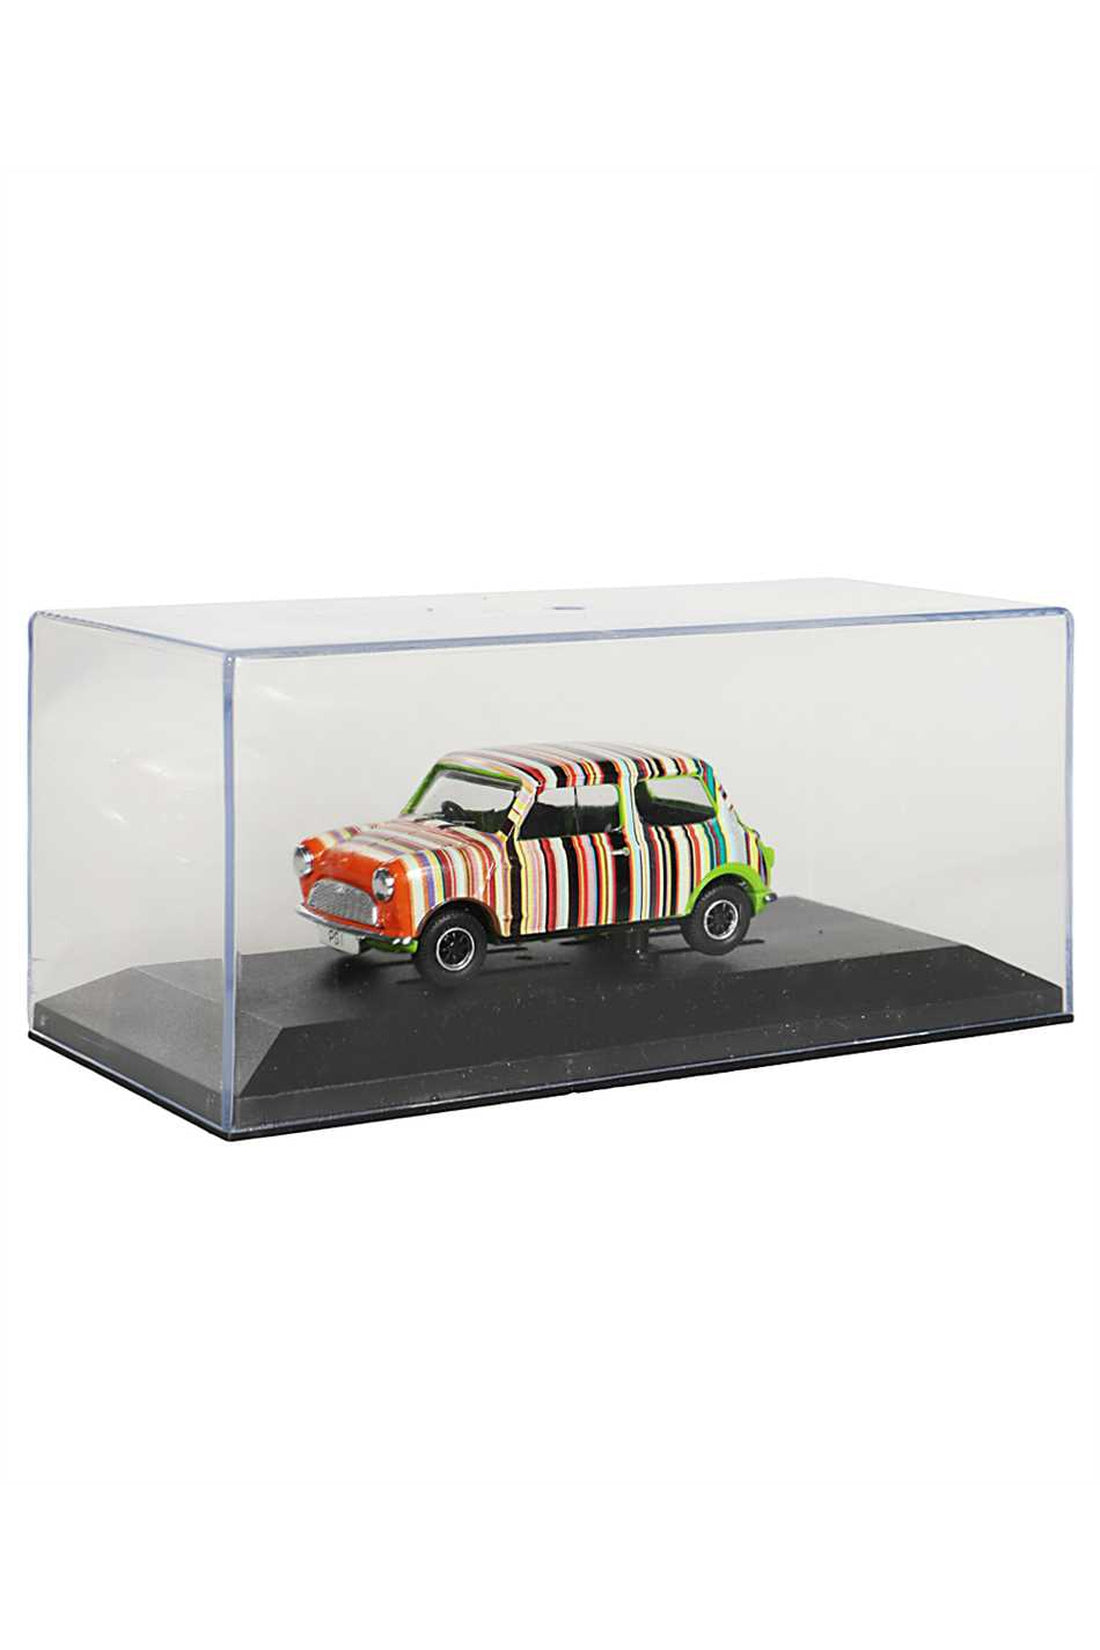 Paul Smith-OUTLET-SALE-Mini car model-ARCHIVIST